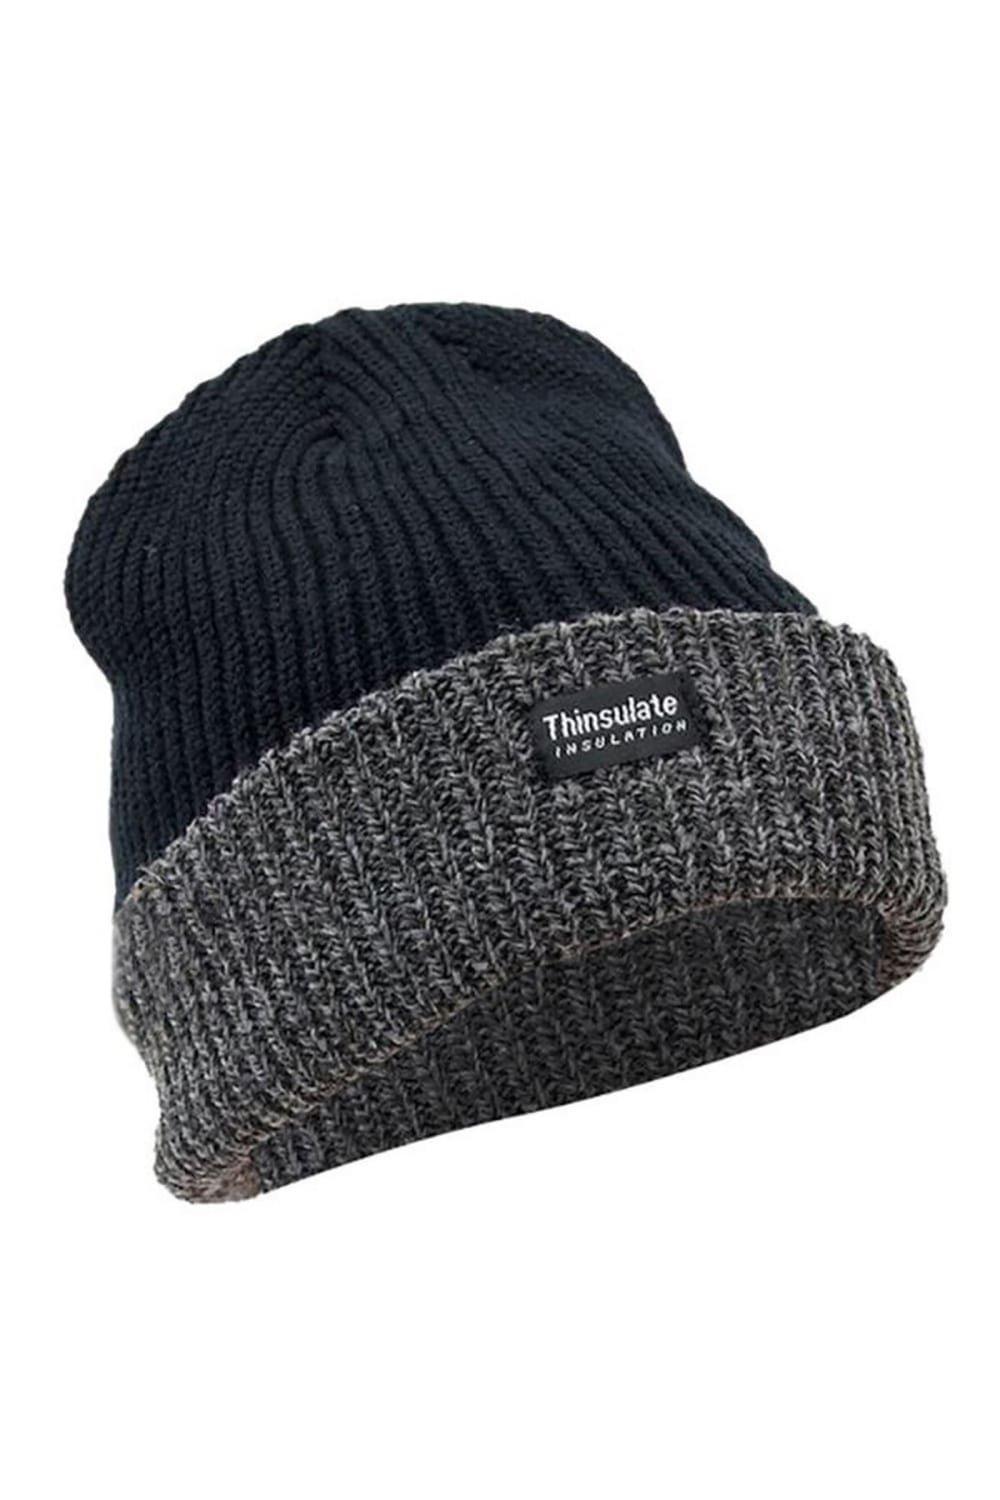 Зимняя/лыжная термошапка Thinsulate Heavy Knit (3M, 40 г) Floso, черный зимние женские облегающие шапки наборы снудов вязаная шапка с градиентом теплая модная уличная ветрозащитная утепленная шапка шарф с зав